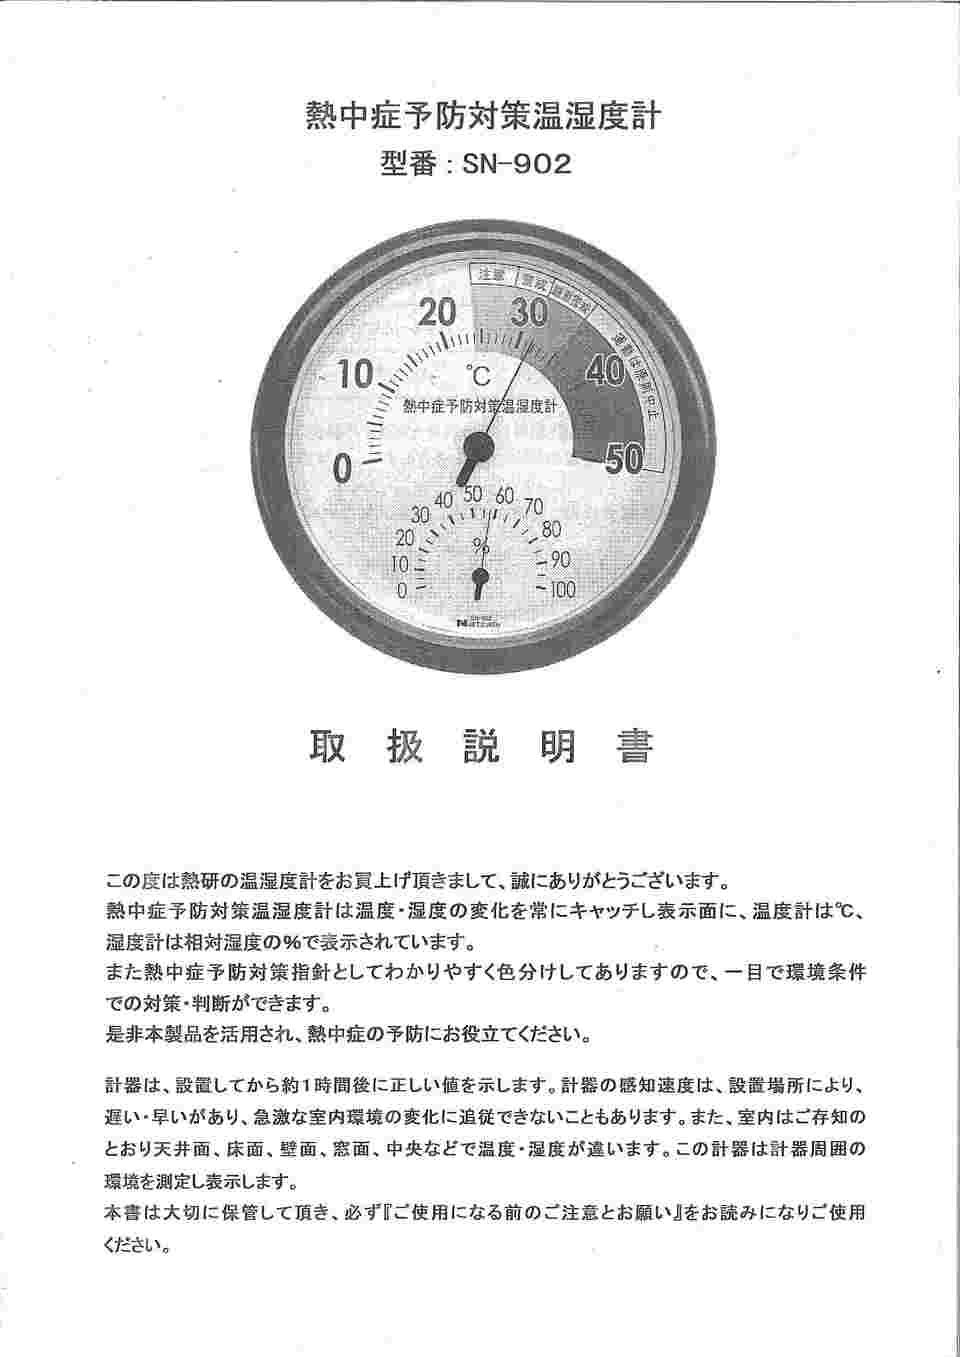 61-3734-34-20 熱中症予防対策温湿度計 校正証明書付 210010/SN-902